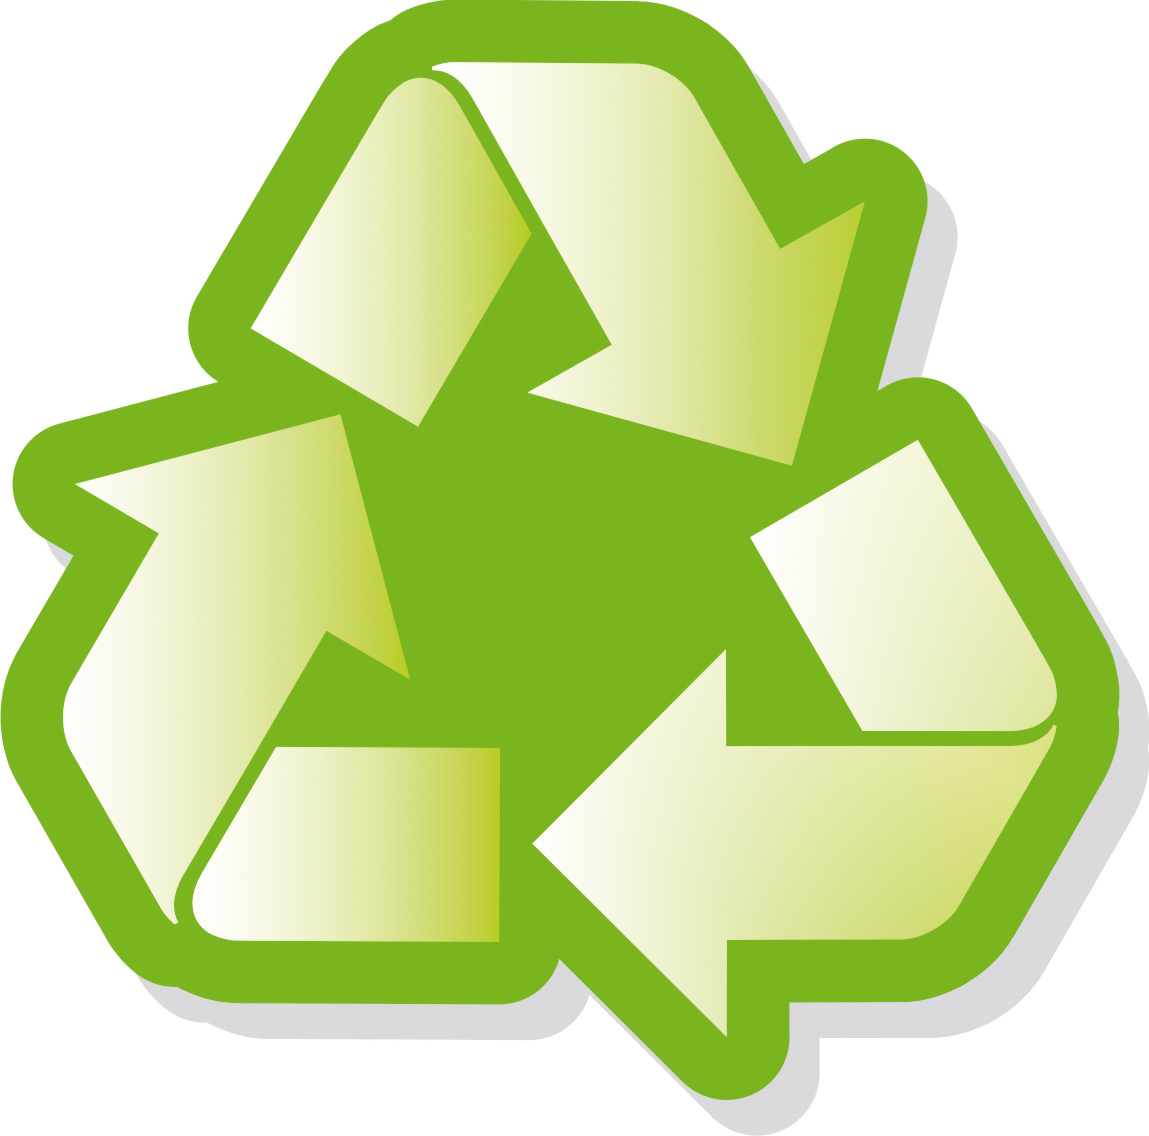 Símbolo reciclaje (ilustración) - Banco de imágenes - UMA Divulga